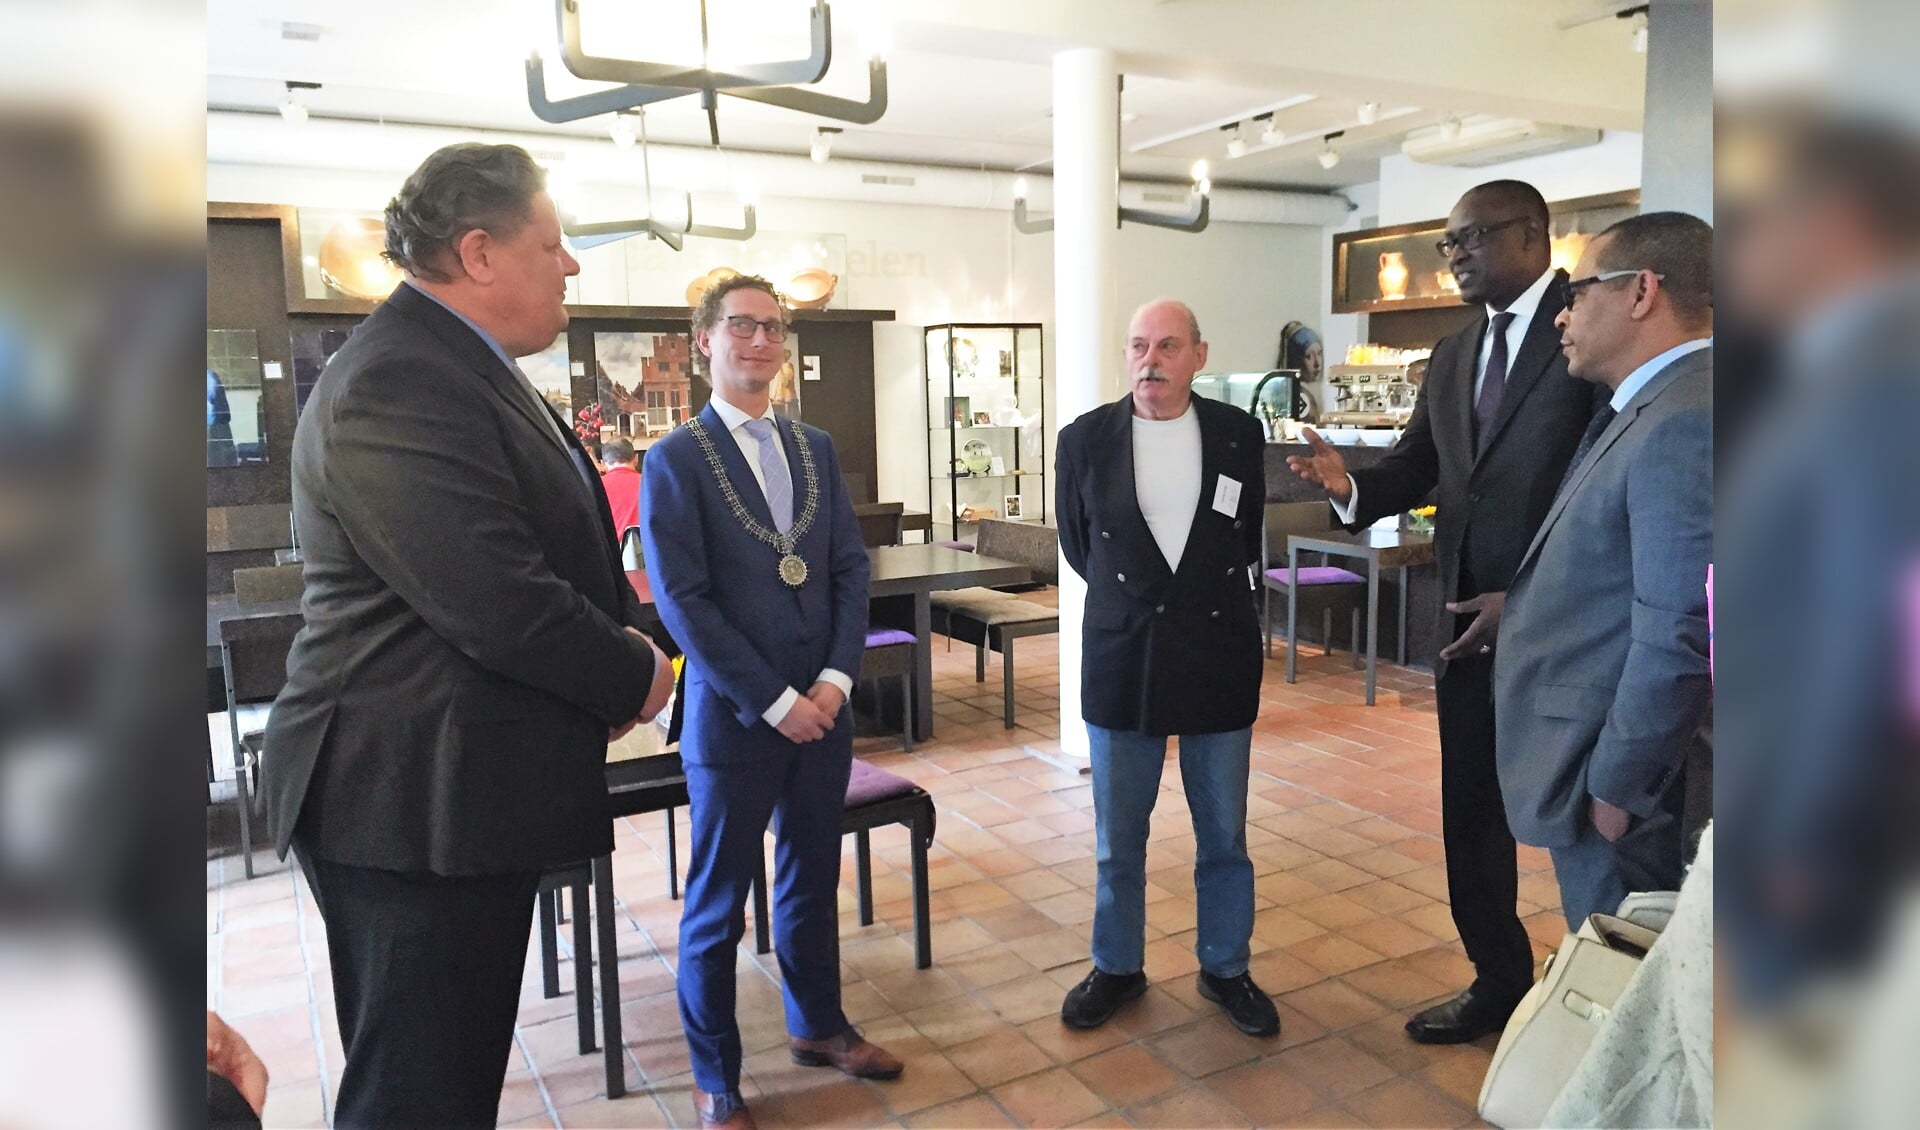 Vermeer Centrum-directeur Herman Weyers (links) en wethouder Ferrie Förster (tweede van links) in gesprek met het hoge bezoek uit Mali. 